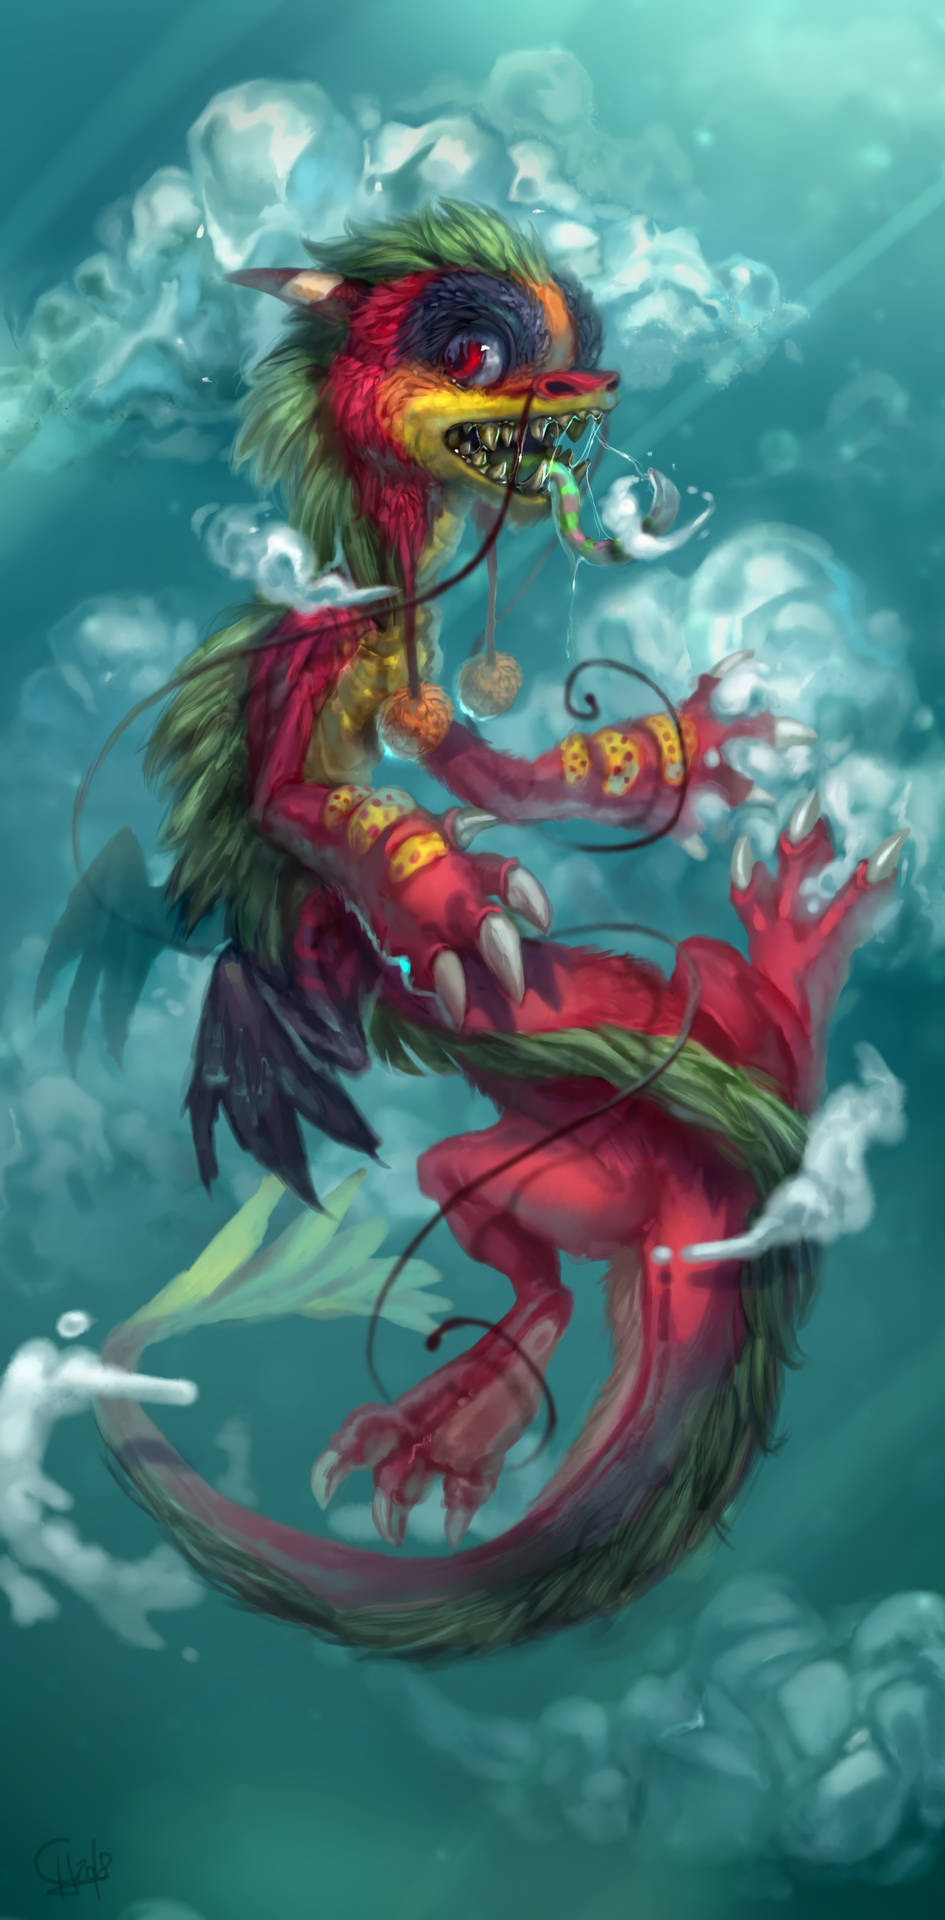 Colorful Water Dragon Artwork Wallpaper